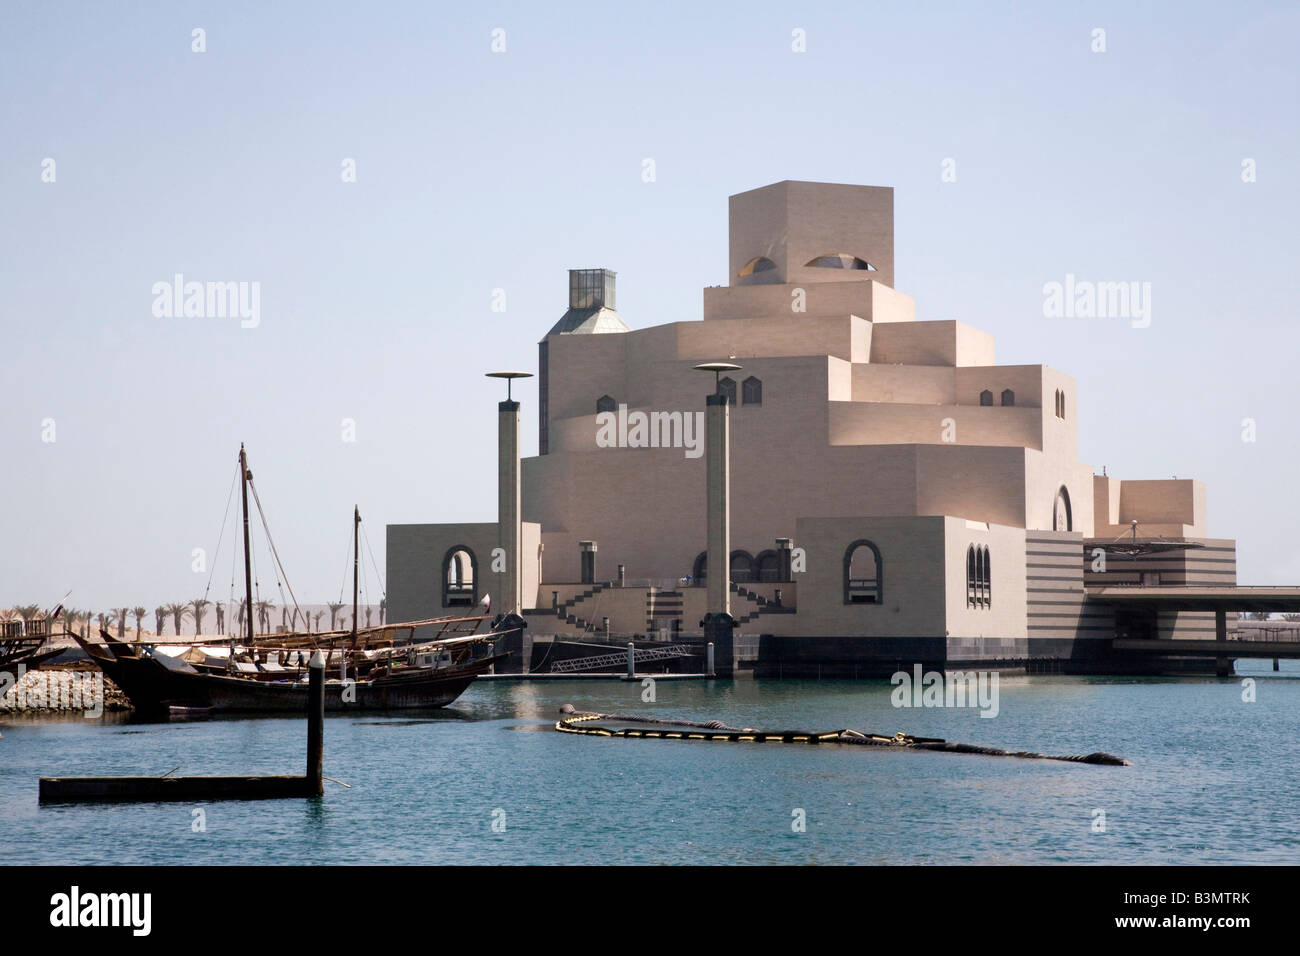 Neues Museum für islamische Kunst in Doha Doha Bay Katar Nahost arabischen Golf Skyline Stockfoto